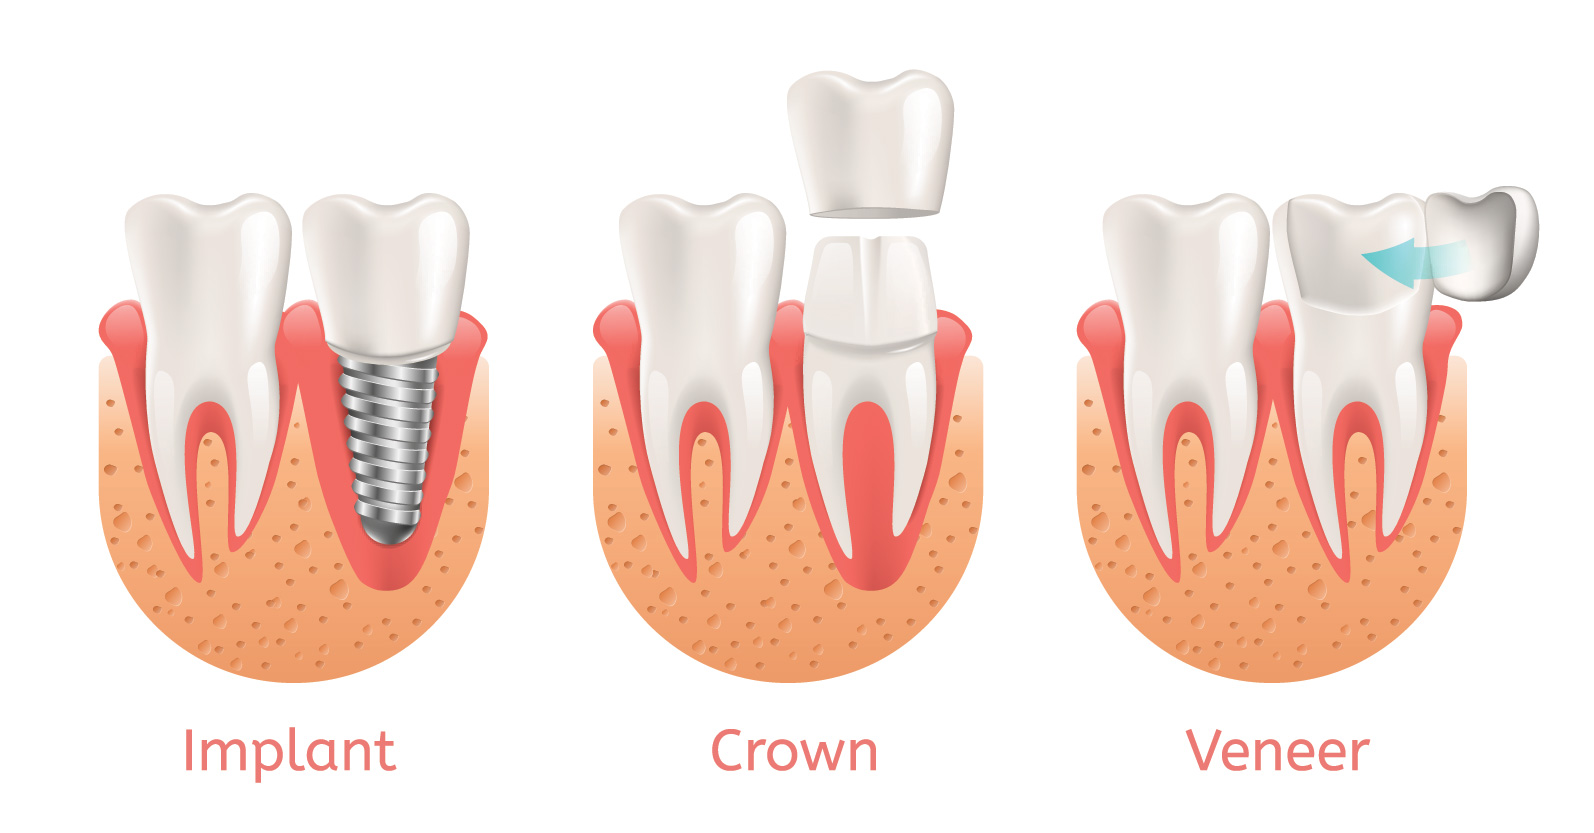 Crown vs veneer vs implant